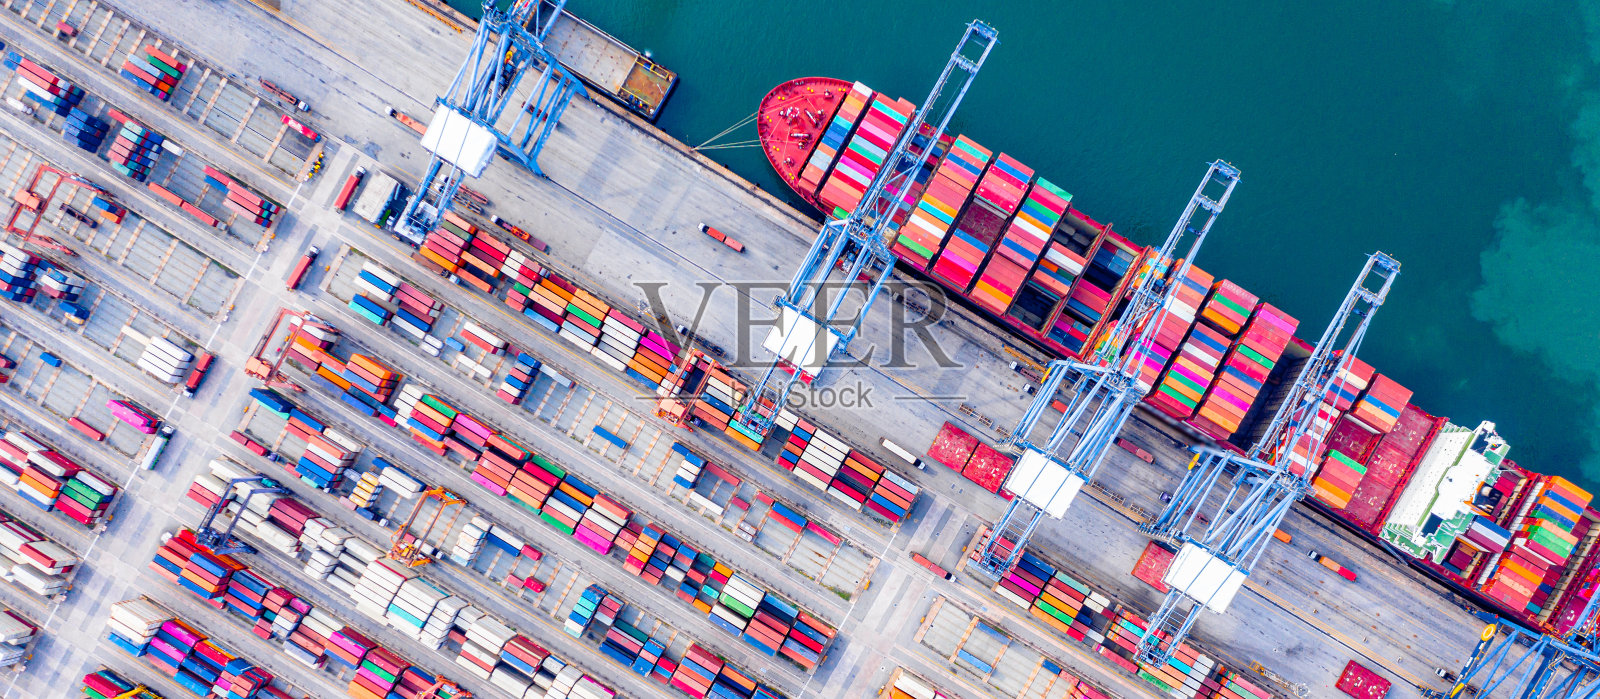 深水港俯视图,有货船和集装箱。它是一个进出口货物港口,是航运码头的一部分,并向世界各地出口产品照片摄影